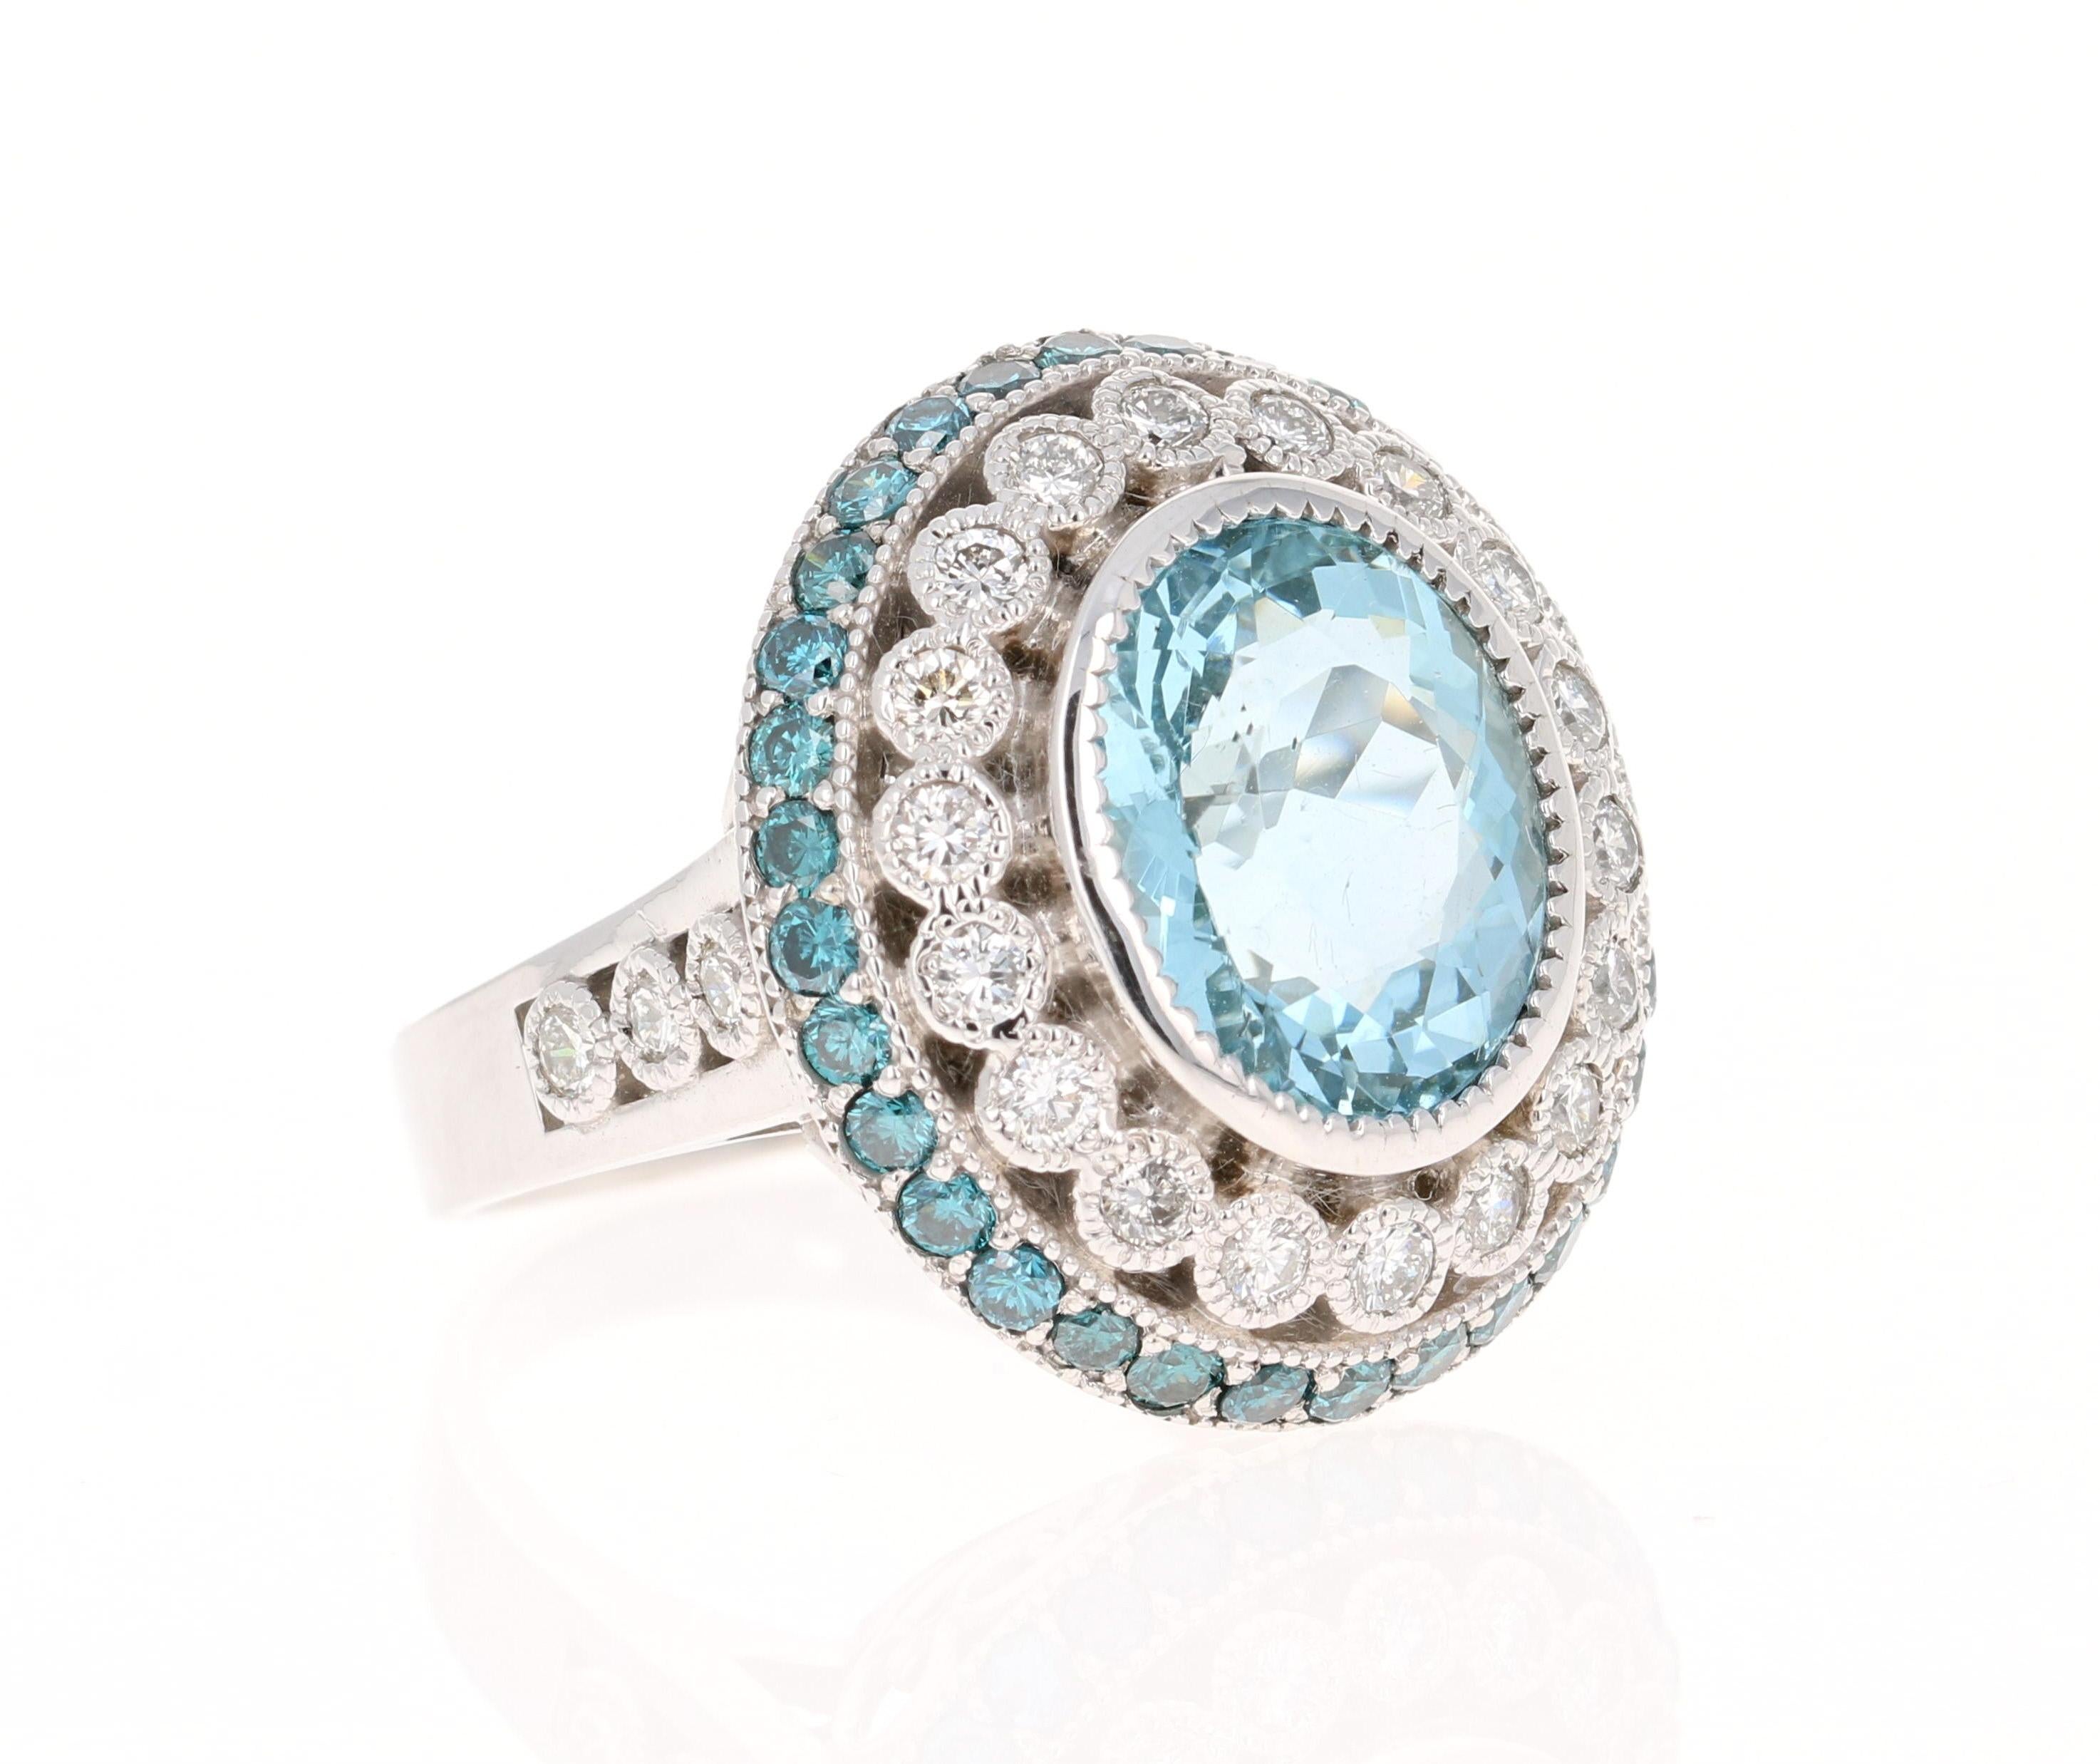 Dieser Ring hat eine schöne 4,73 Karat Oval Cut Aquamarin und ist umgeben von 32 Round Cut Blue Diamonds, die 0,96 Karat wiegen. Die blauen Diamanten werden farbbehandelt, um ihre blaue Farbe gemäß den Industriestandards zu erhalten. Außerdem gibt